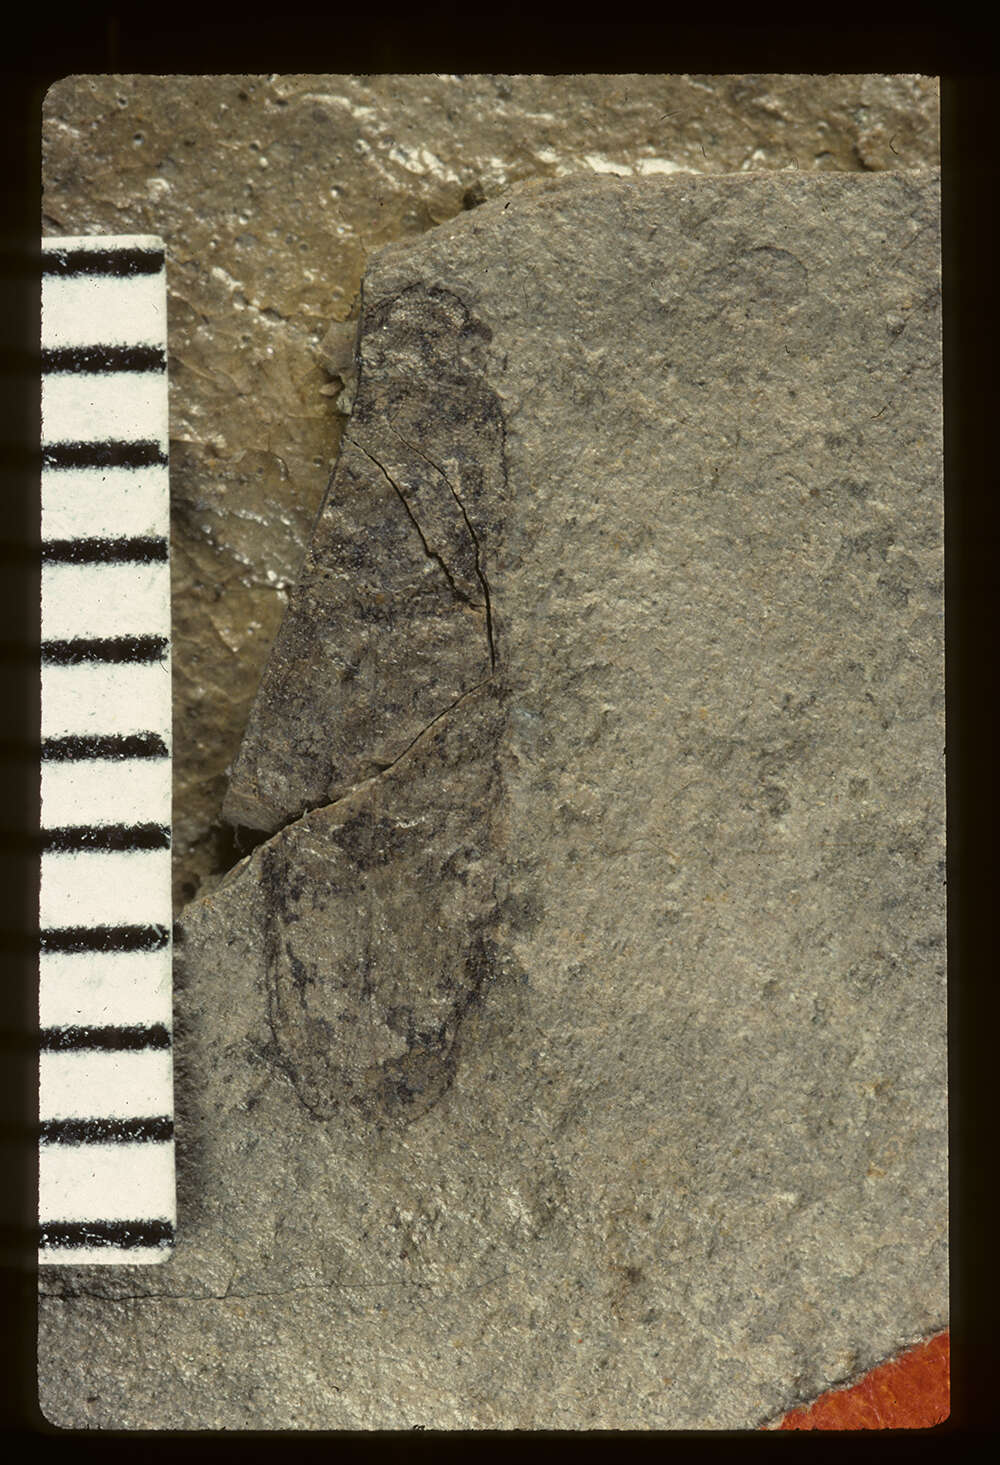 Image of <i>Megapenthes primaevus</i> Wickham 1916